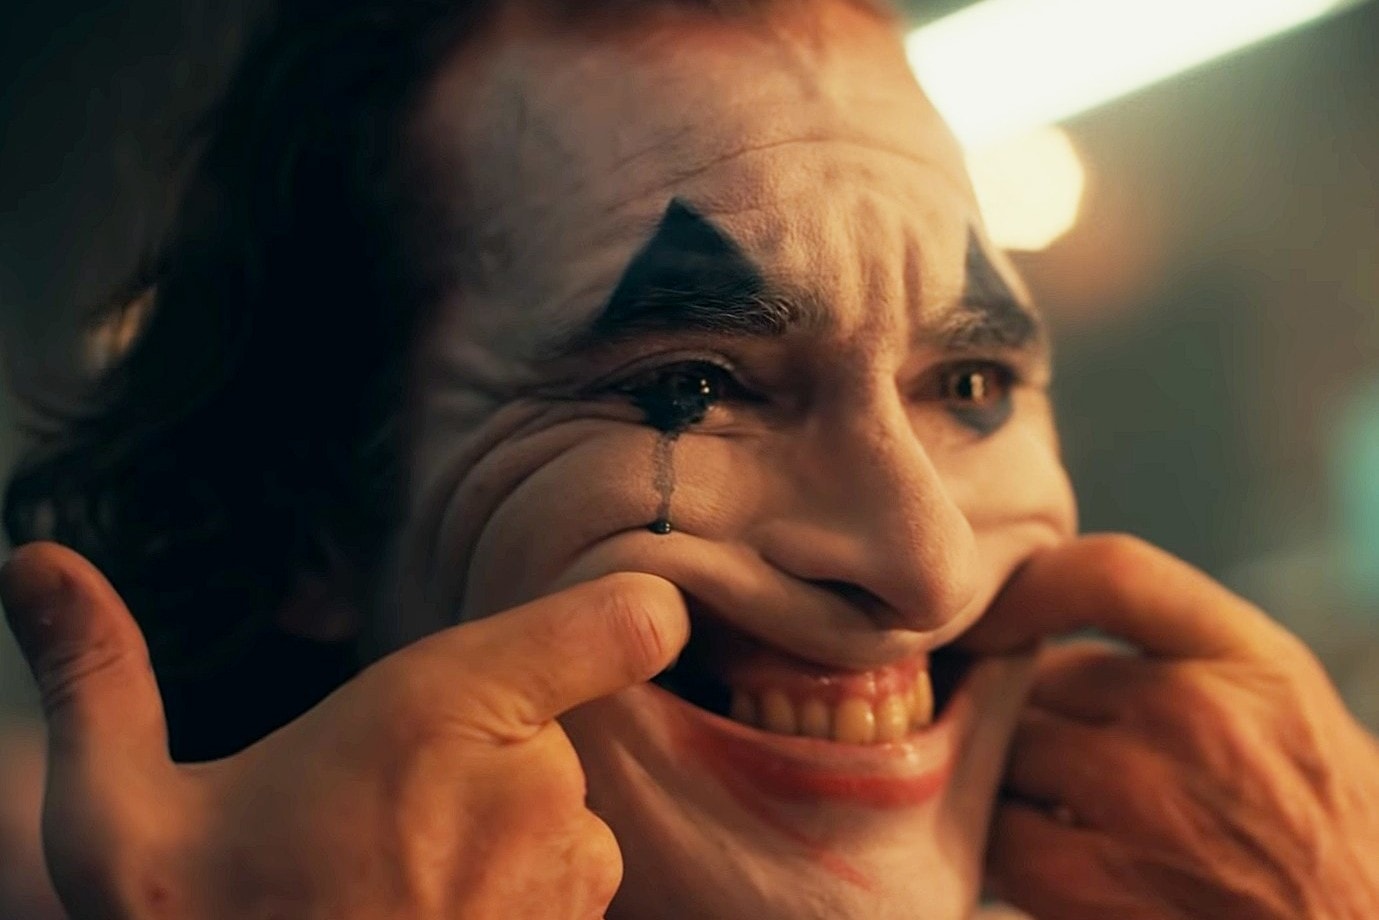 最高榮譽加持！DC 獨立電影《Joker》奪下 2019 威尼斯影展金獅獎